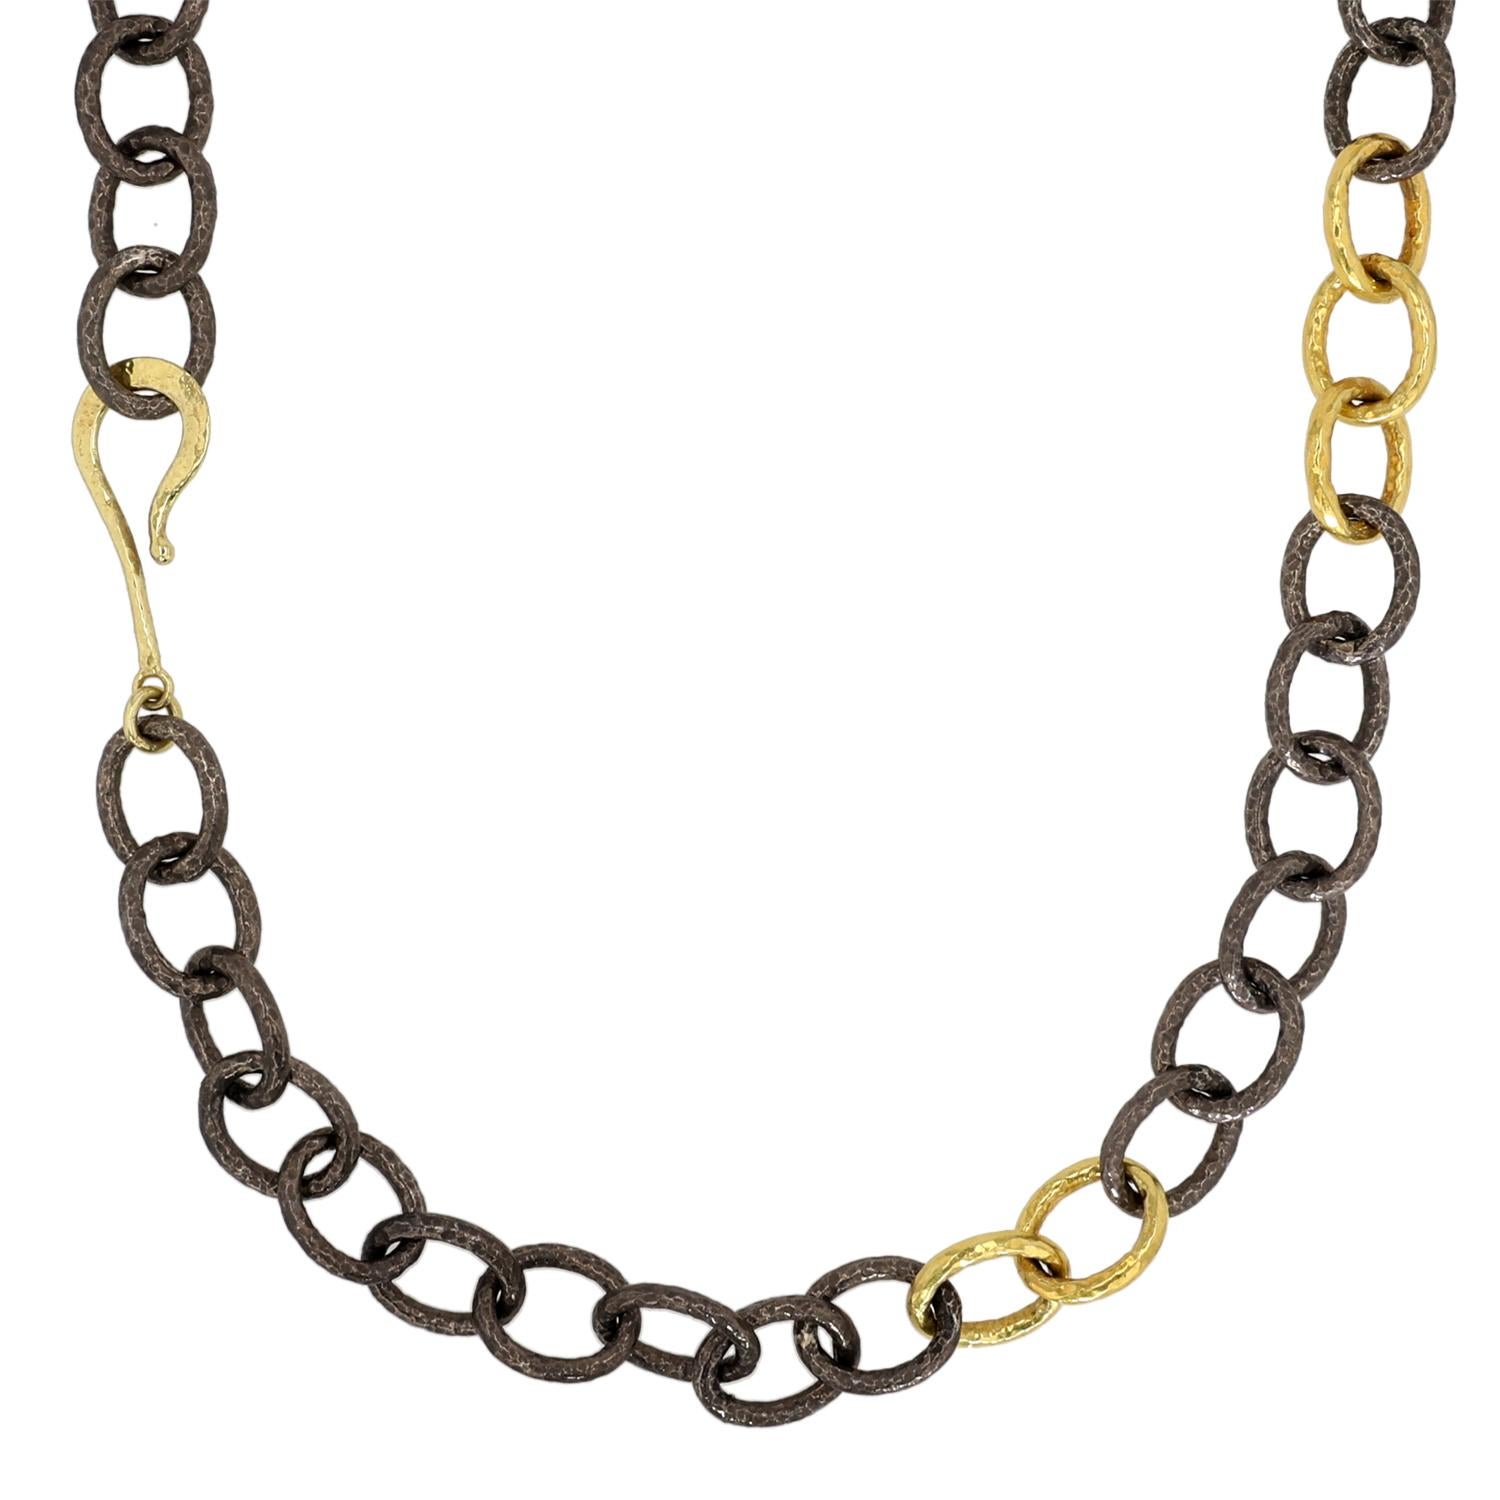 Diese elegante Halskette von Jorge Adeler besticht durch die Kombination von 18-karätigem Gelbgold und oxidiertem Silber, die zu einer Reihe von Gliederketten verarbeitet wurden. Das Design ist mit einem Fischhakenverschluss versehen, der ein